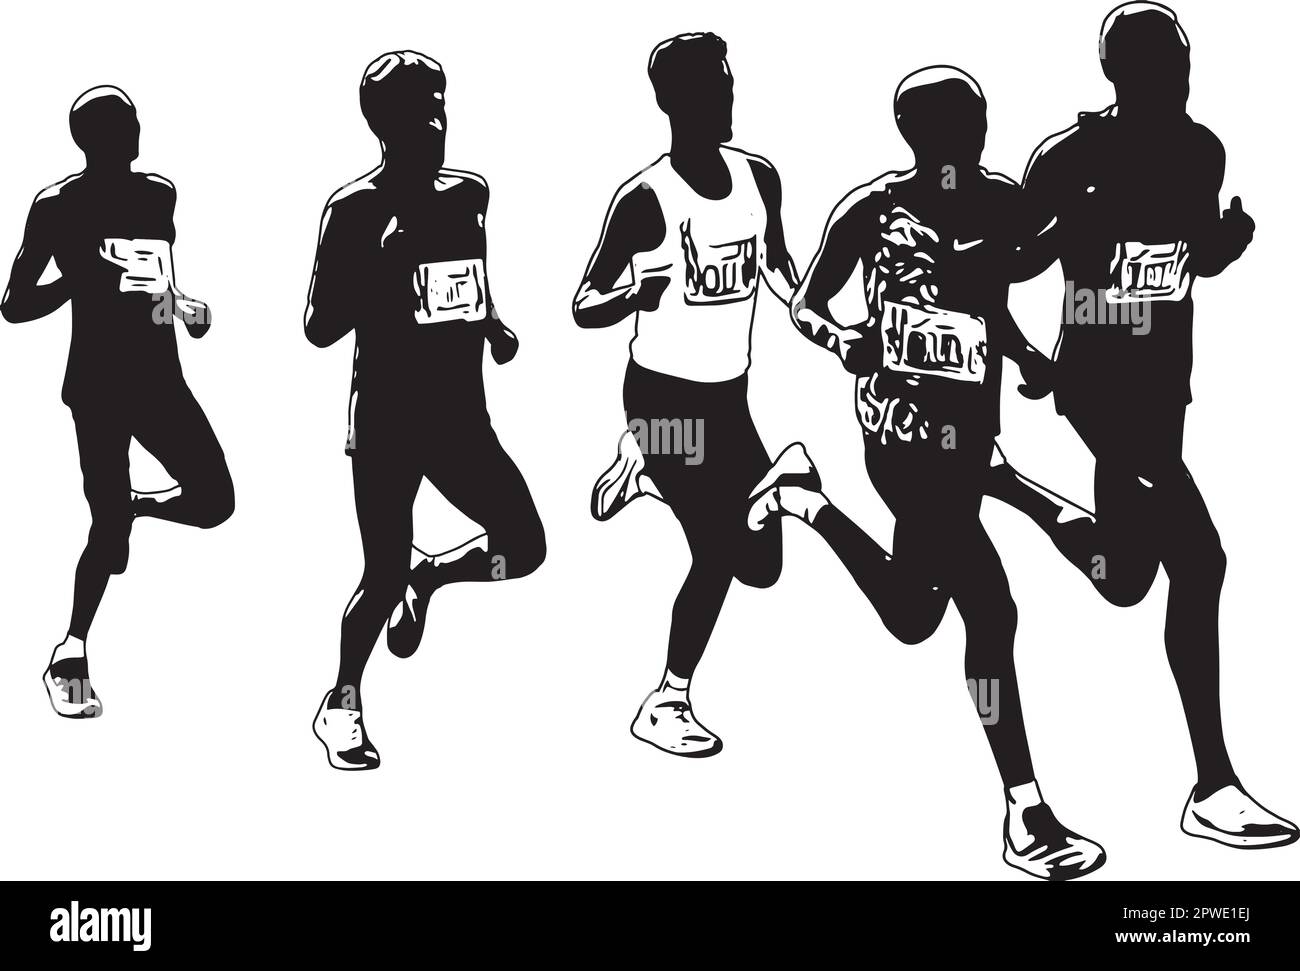 marathon-Angusskanäle, die in der Gruppe laufen - Zeichenvektor skizzieren Stock Vektor